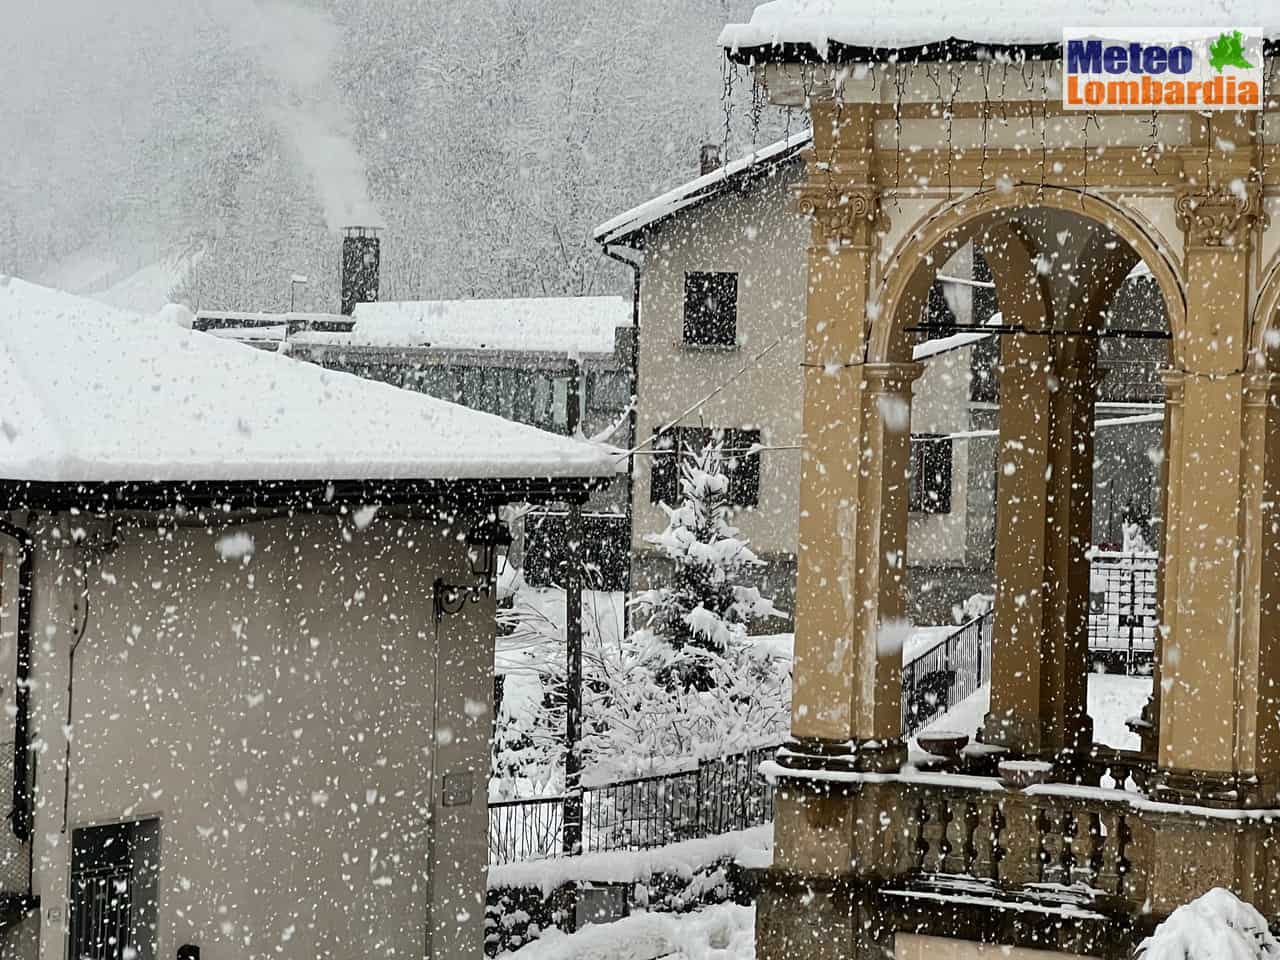 meteo lombardia7 - Meteo Lombardia, una nevicata normale in un Inverno anomalo